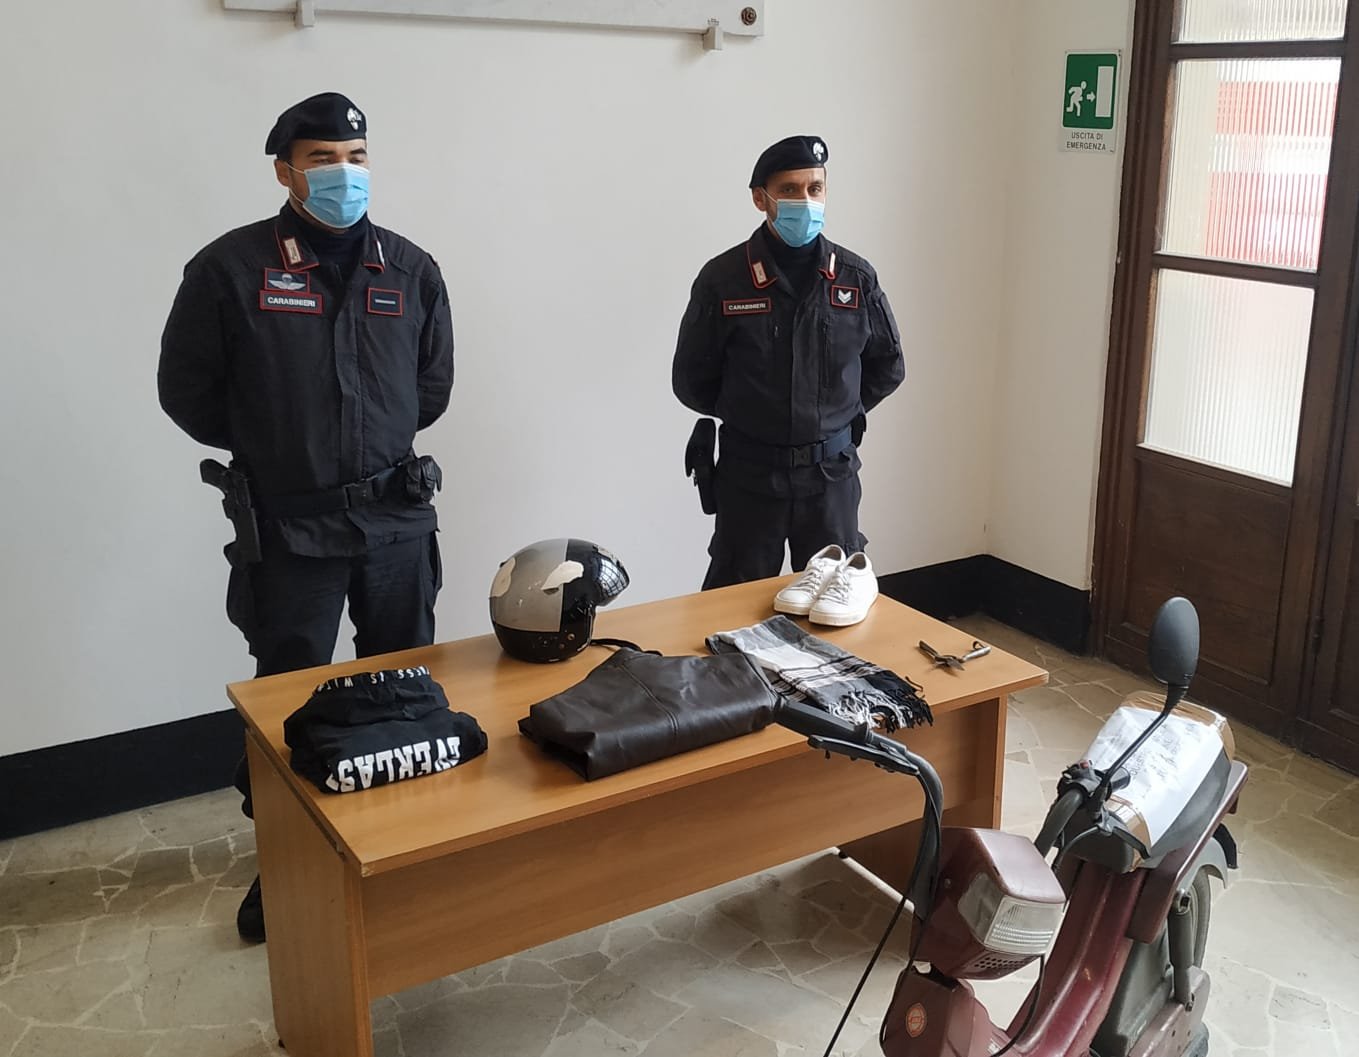 Scippa una pensionata a Tortona: rintracciato e denunciato dai Carabinieri